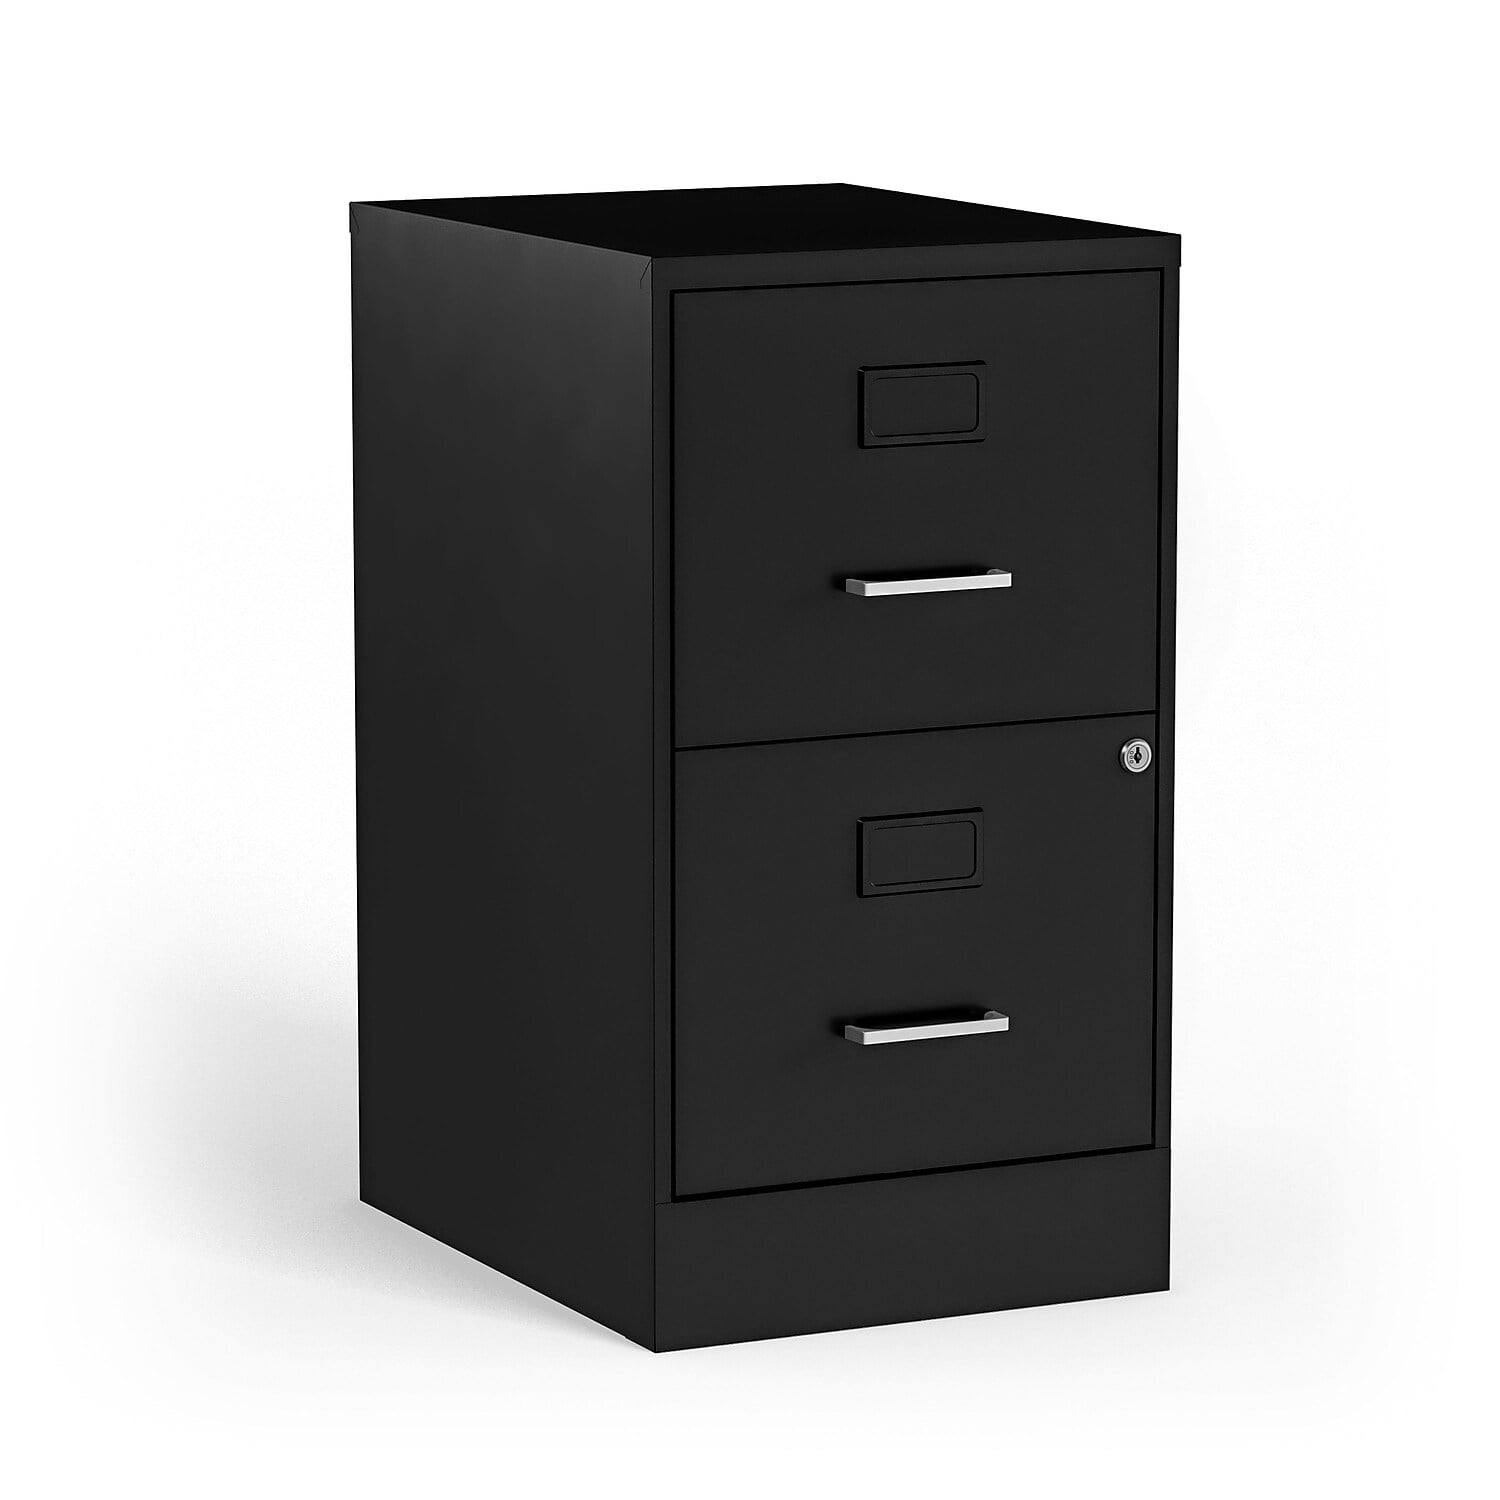 25157D Staples 85988 2-Drawer Vertical File Cabinet Locking Letter Black 25-Inch D 